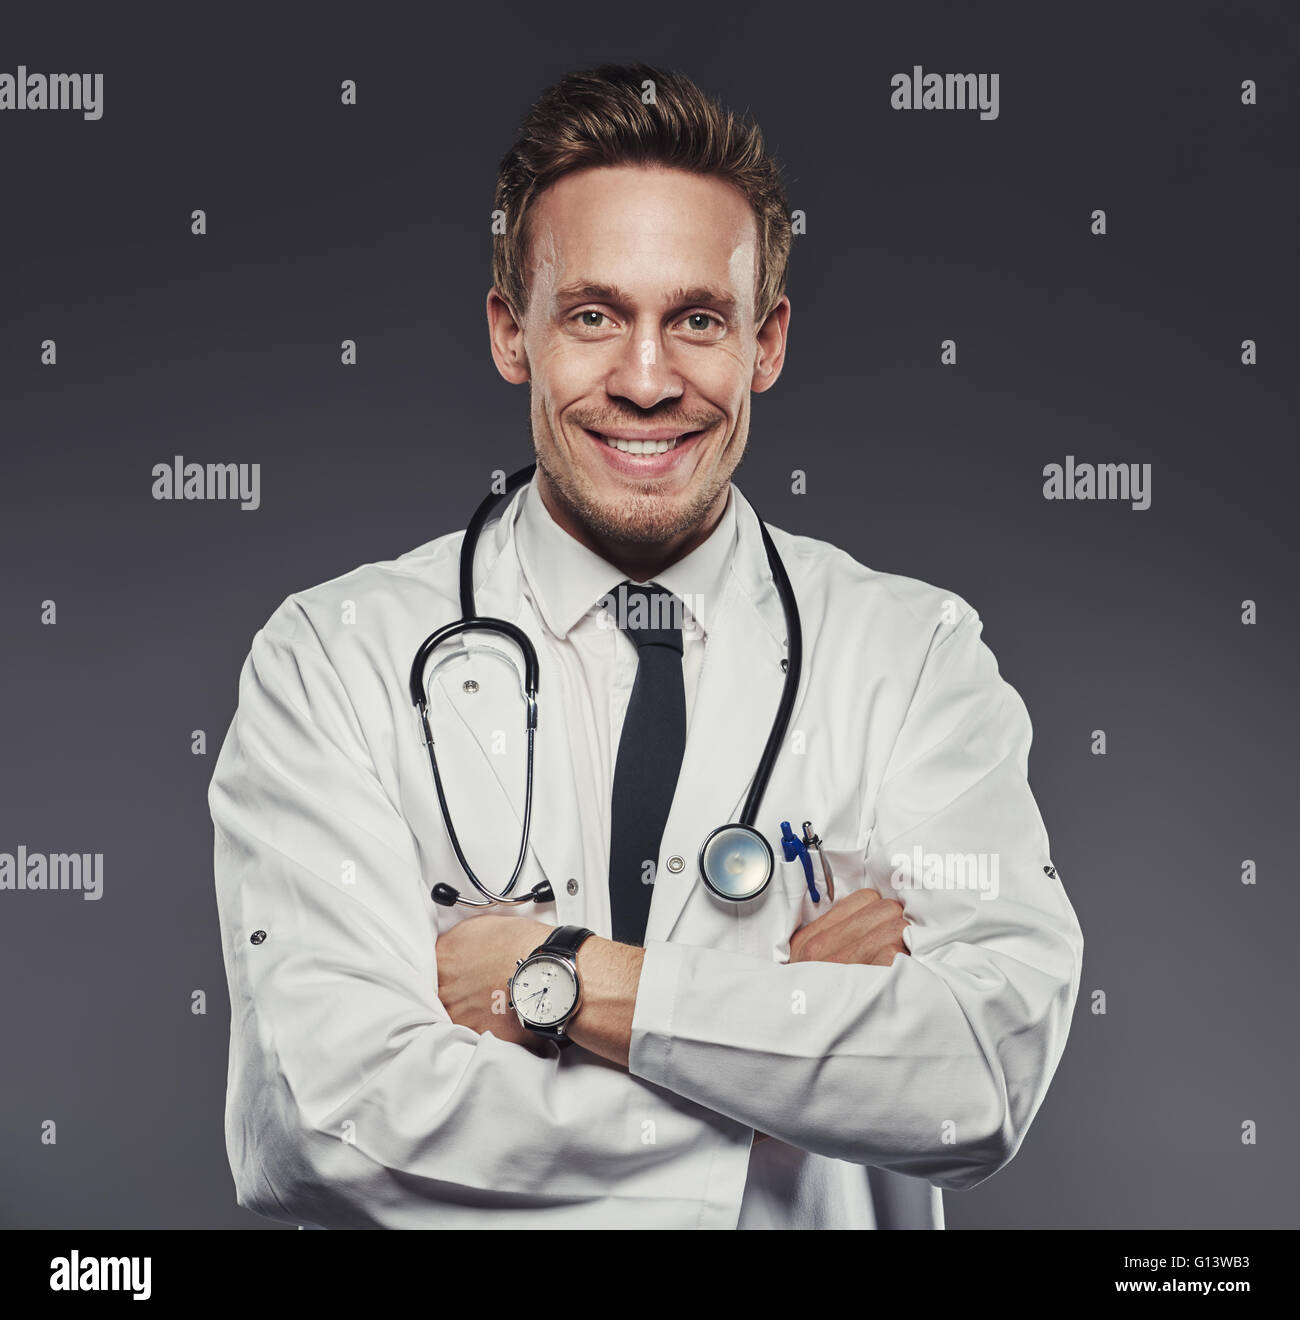 Junge glücklich und freundliche Arzt posiert mit verschränkten Armen während des Tragens medizinische Weißkittel, Armbanduhr und ein Stethoskop, Ill Stockfoto